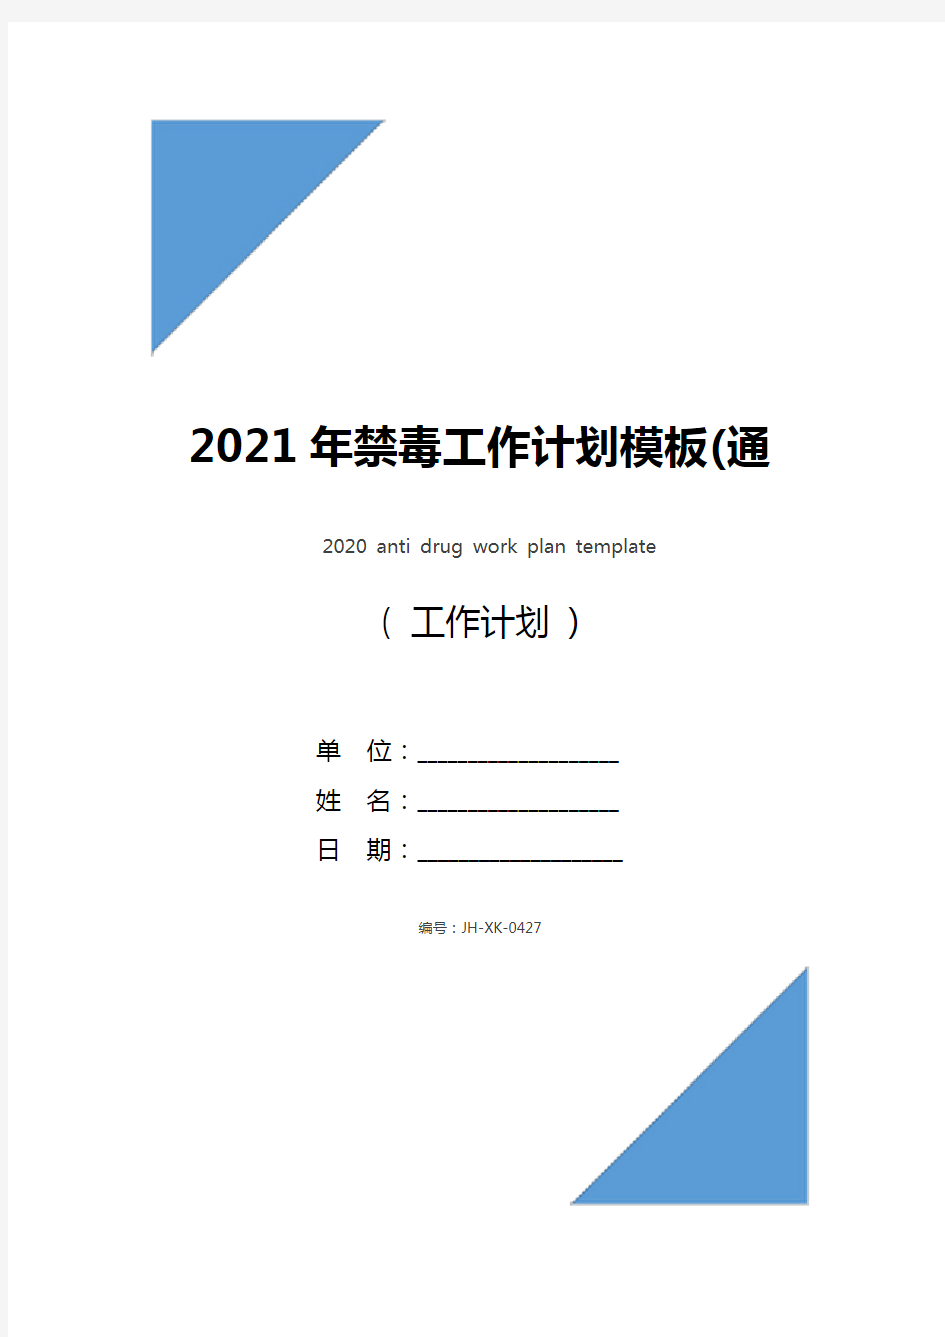 2021年禁毒工作计划模板(通用版)